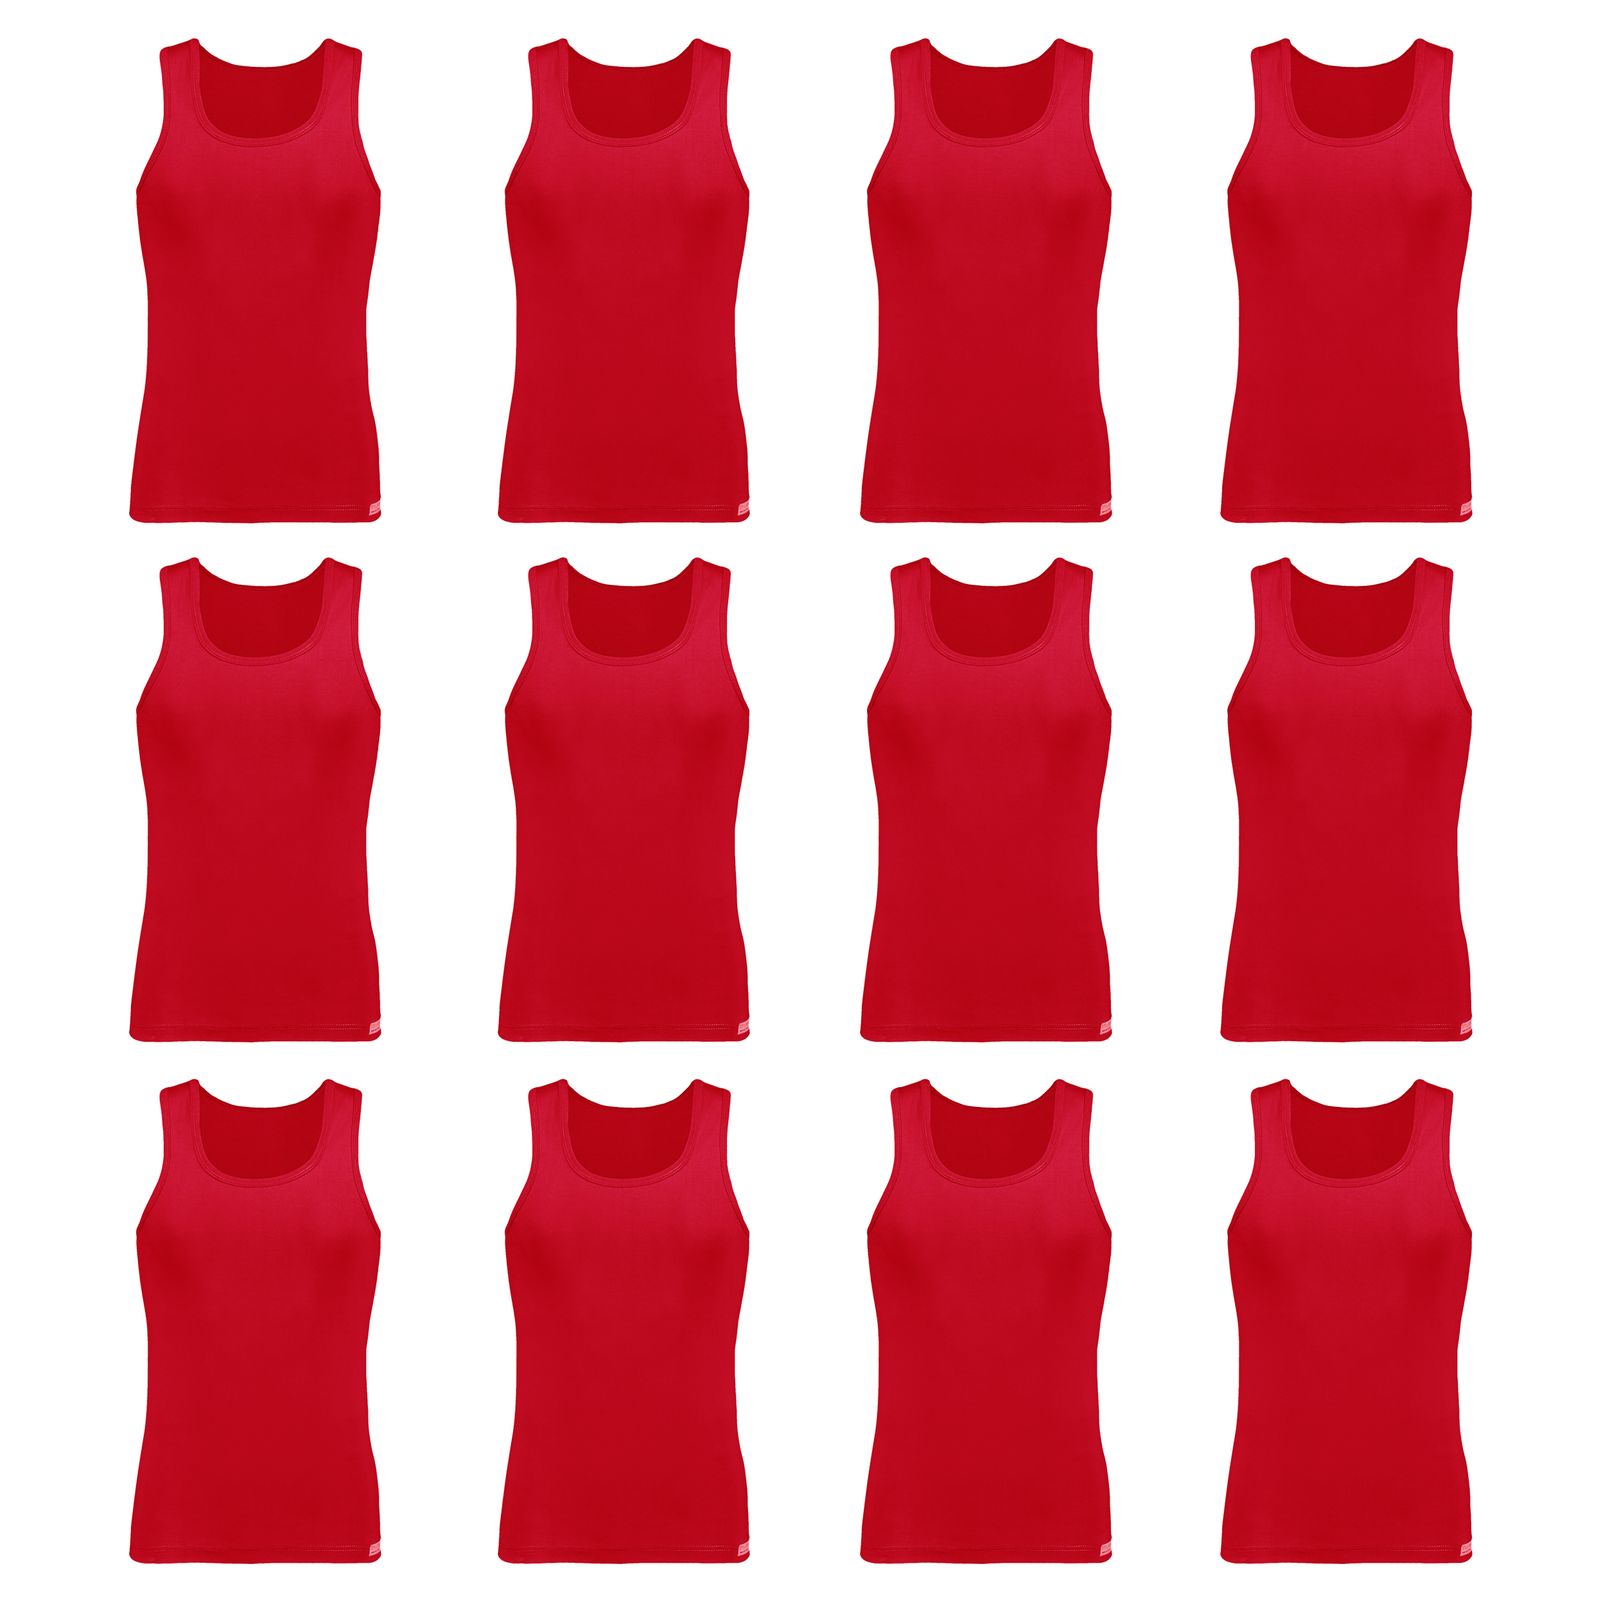 زیرپوش رکابی مردانه برهان تن پوش مدل 2-01  رنگ قرمز بسته 12 عددی -  - 1